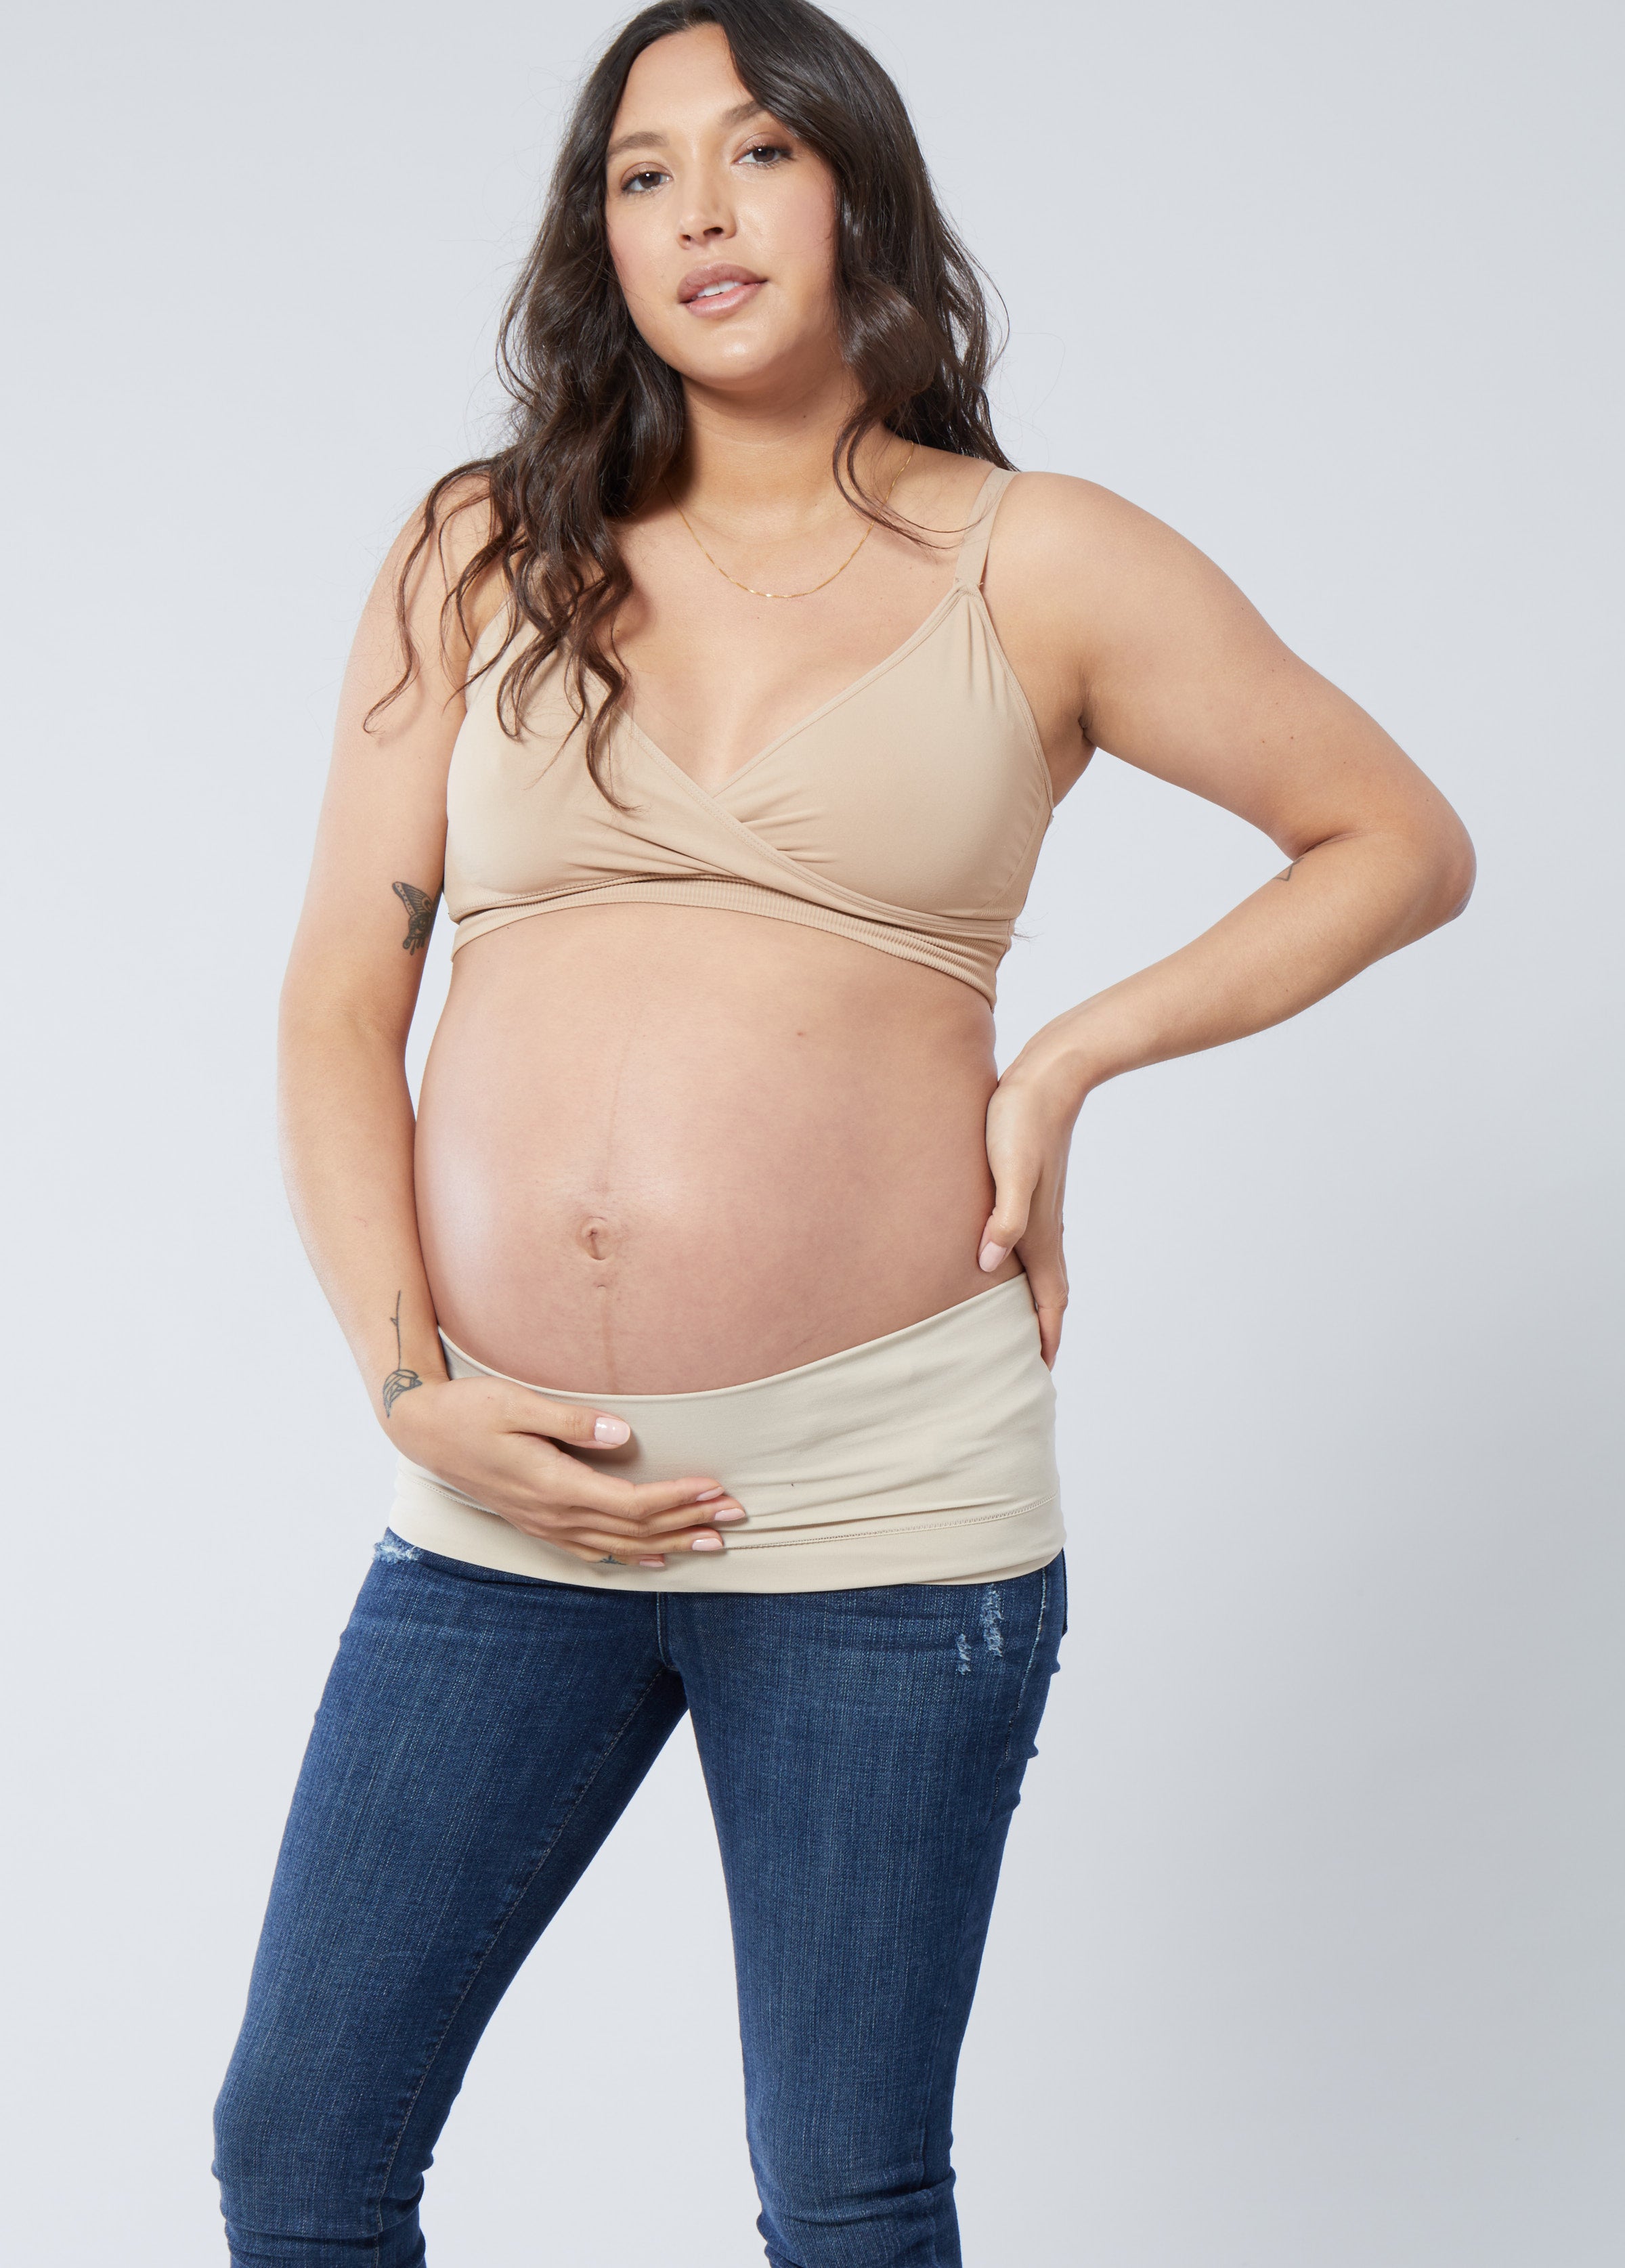 Maternity Pant Extenders - Buy Pregnancy Pant Extenders Online